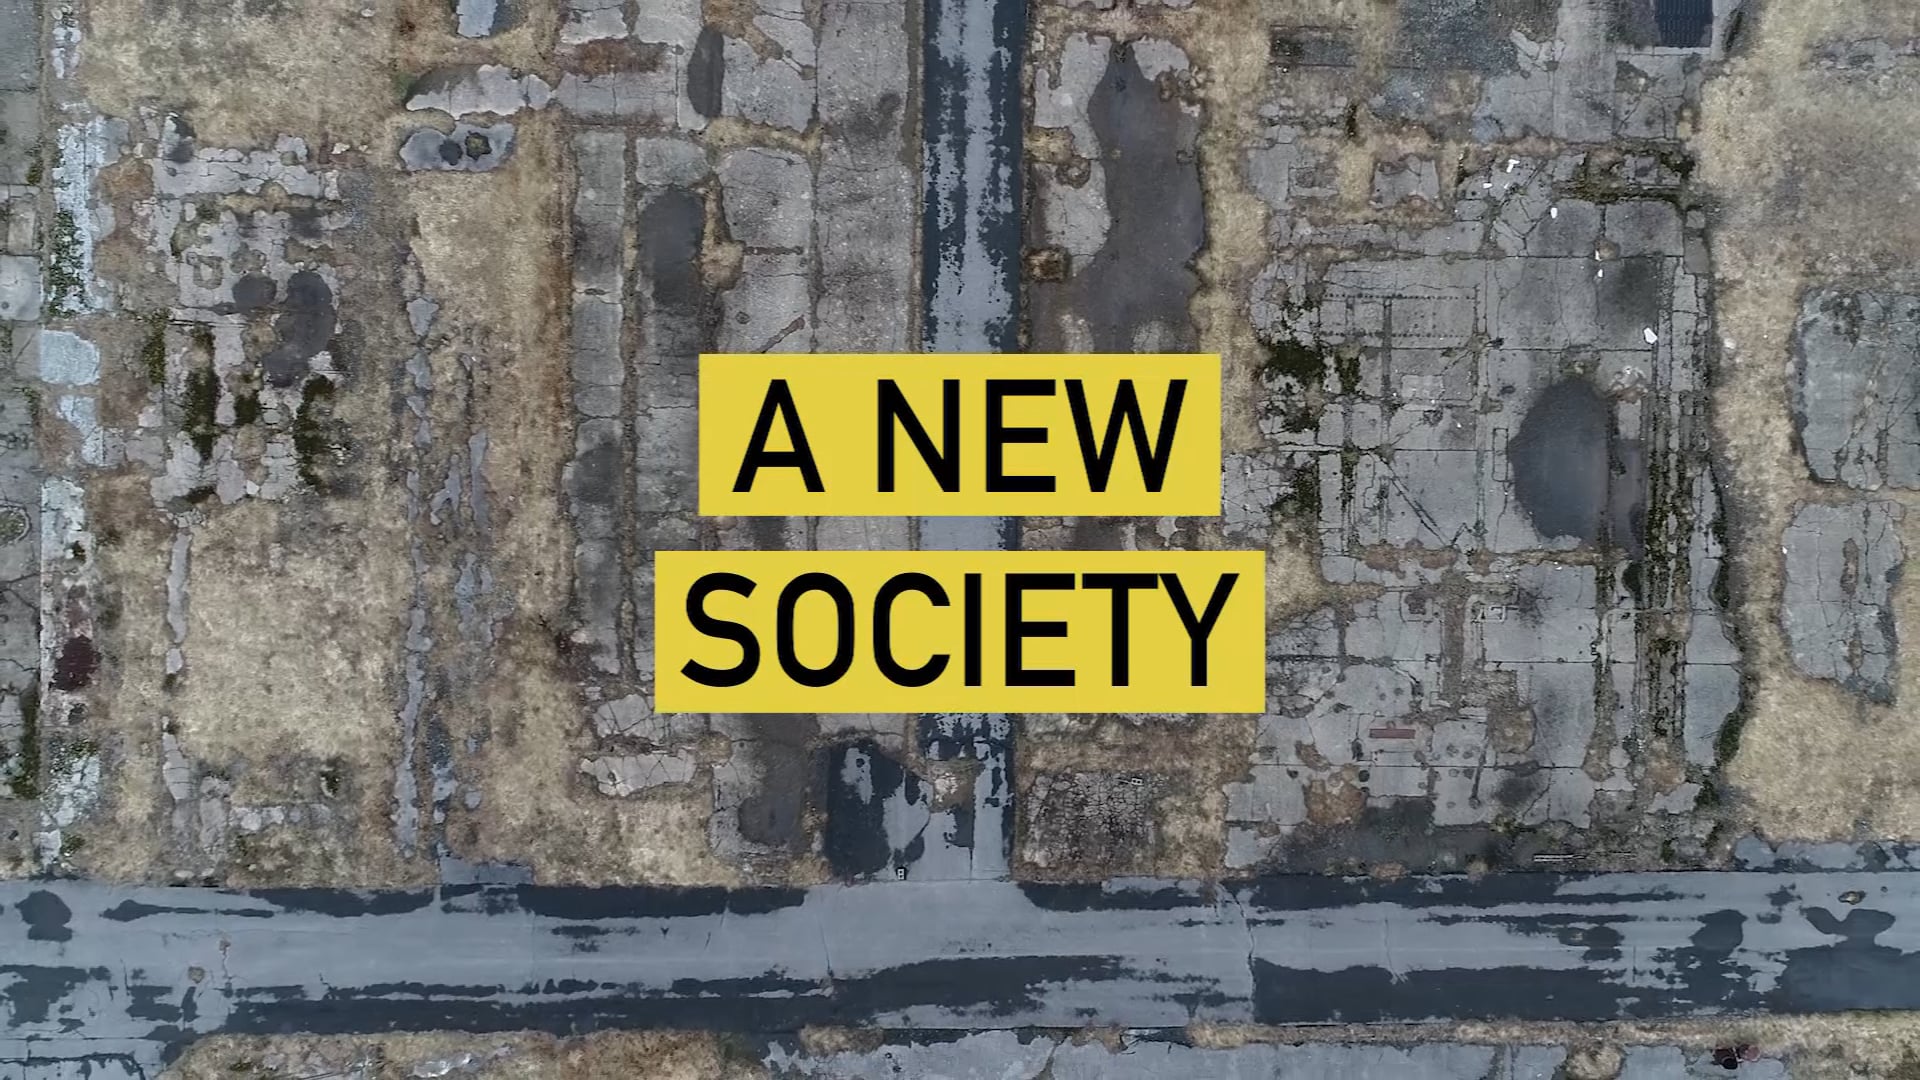 Creating New Society. New society